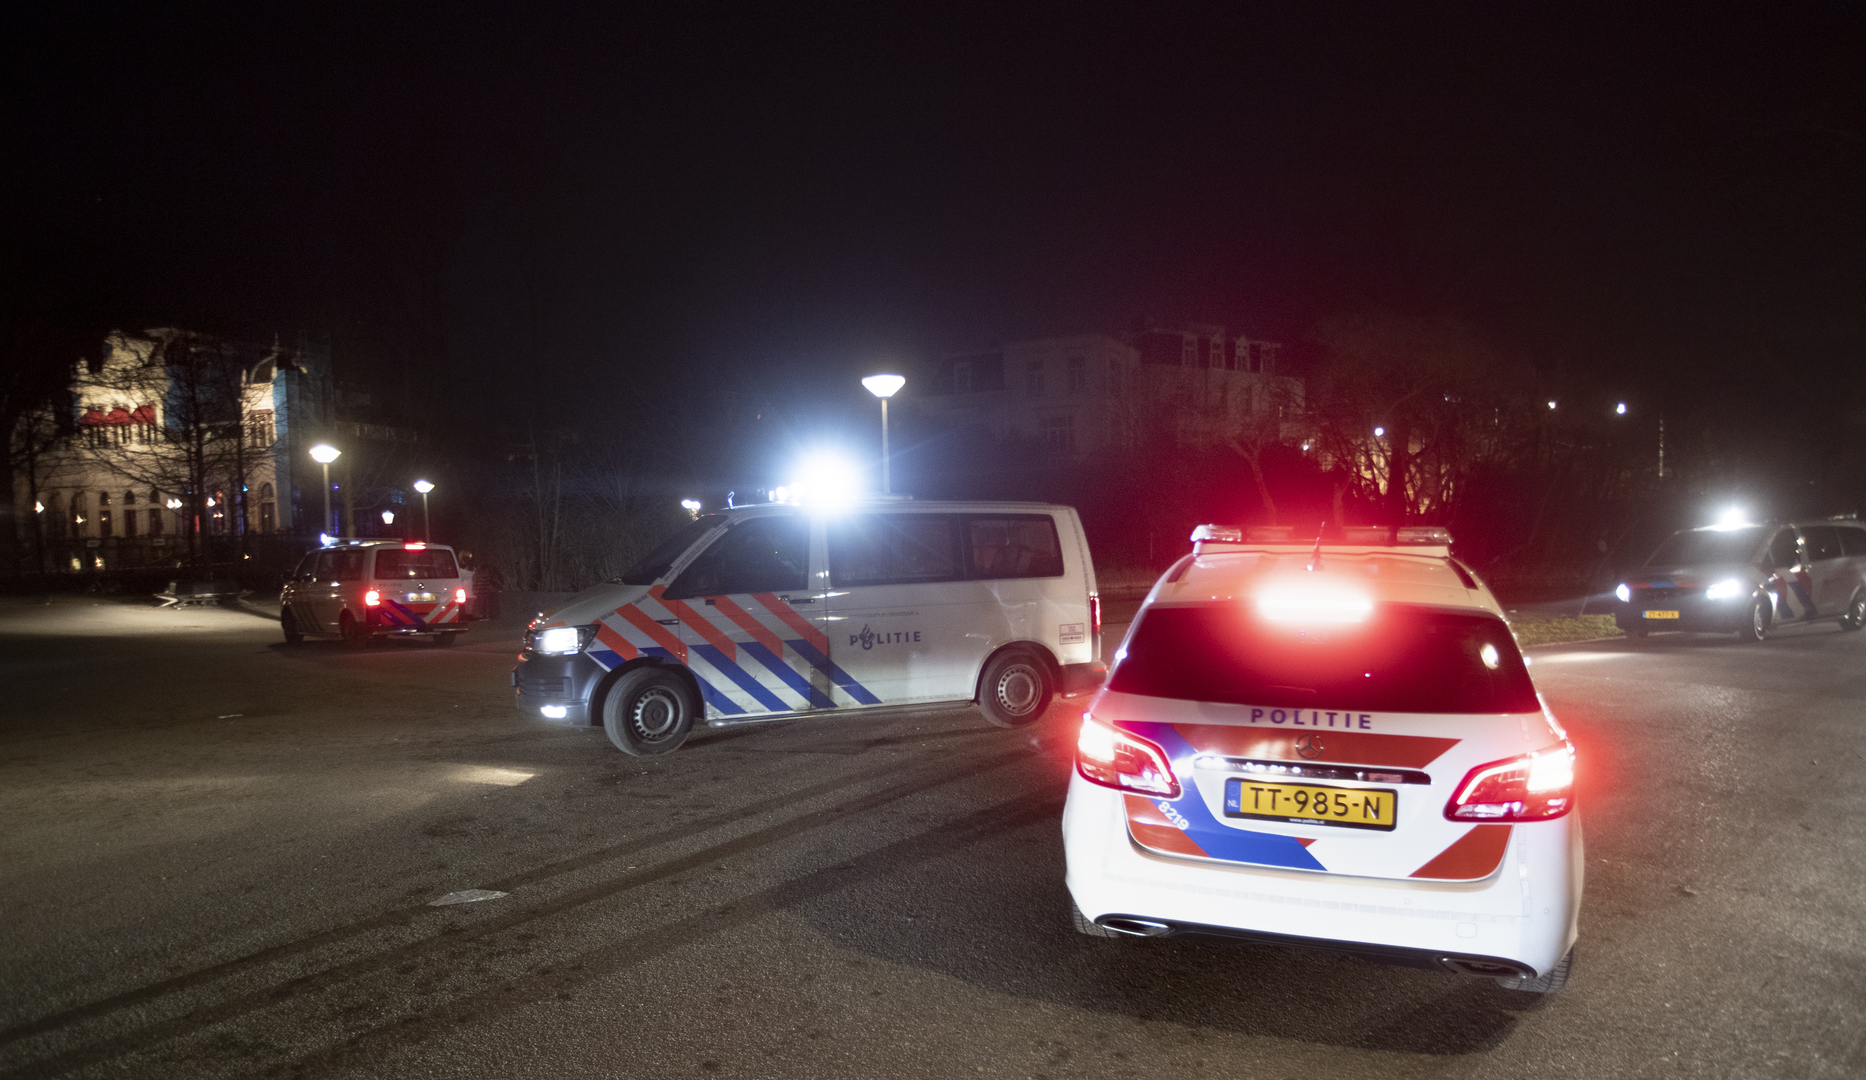 دولة القانون تحت ضغط الجريمة المنظمة في هولندا